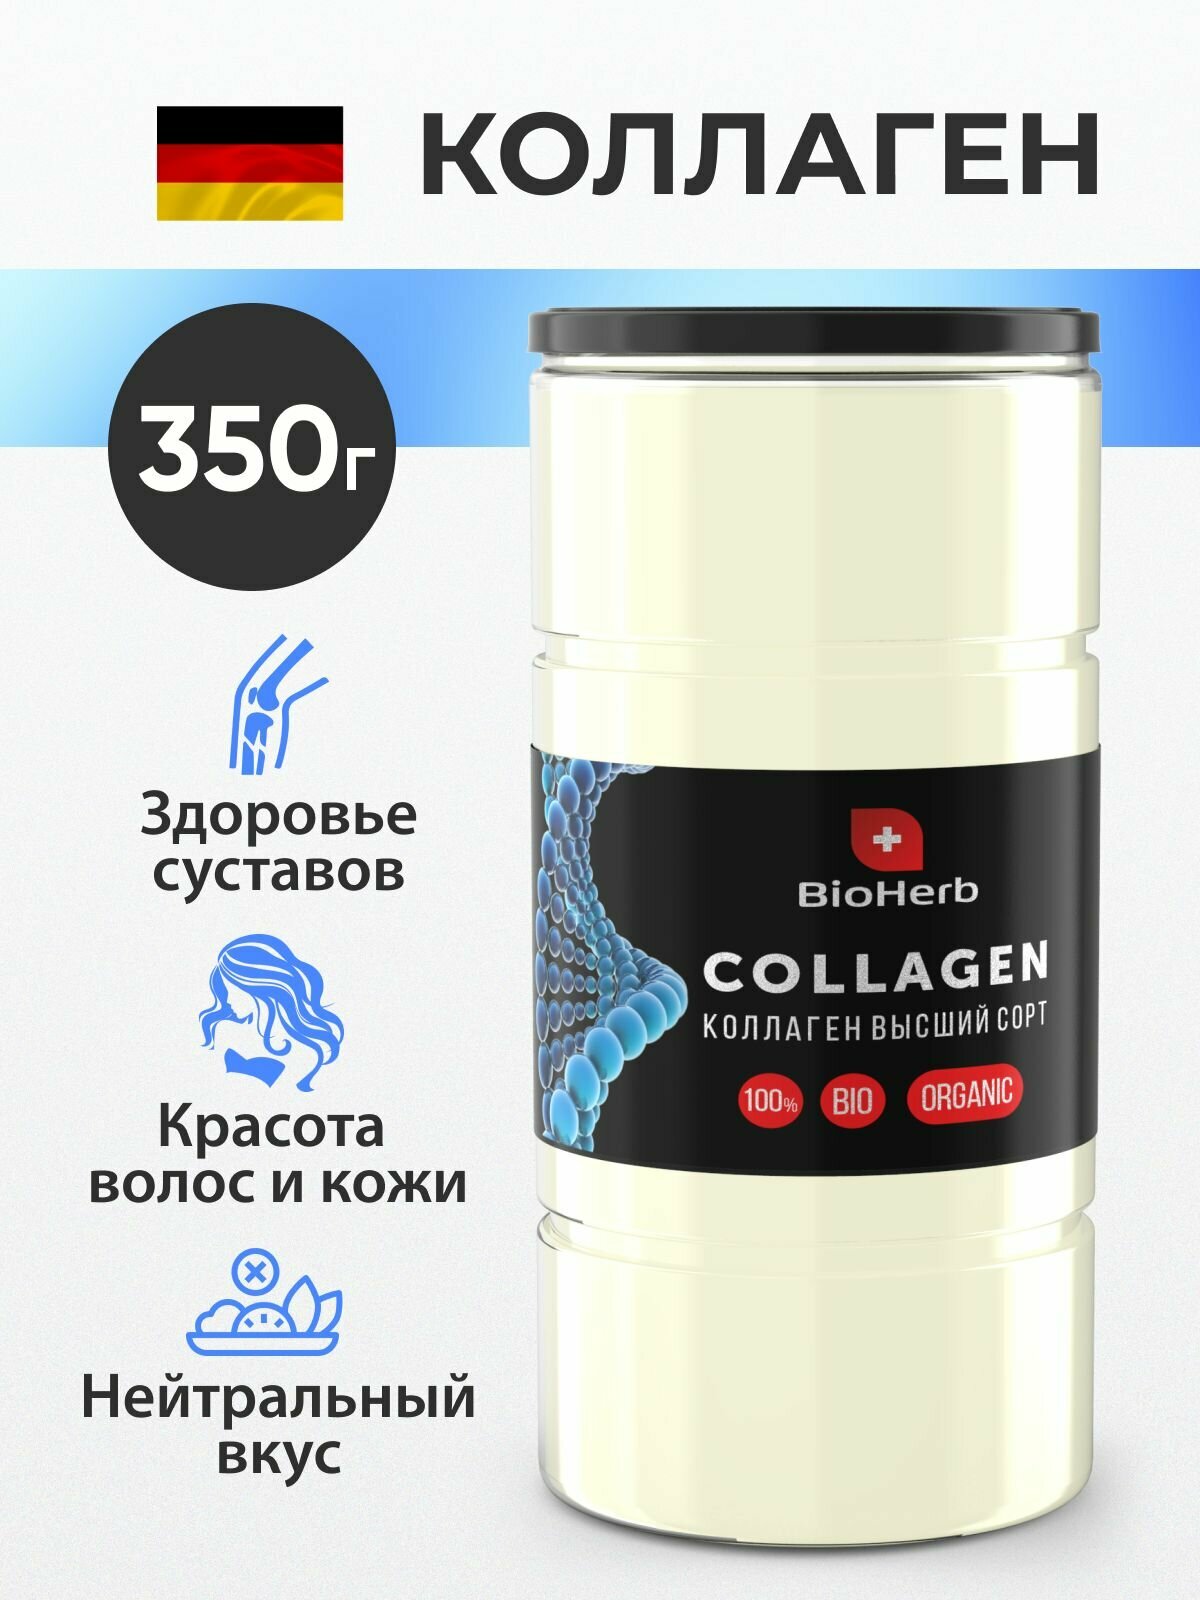 BioHerb Коллаген говяжий 1 и 3 типа для лица суставов и связок питьевой порошок 350 г (70 порций)